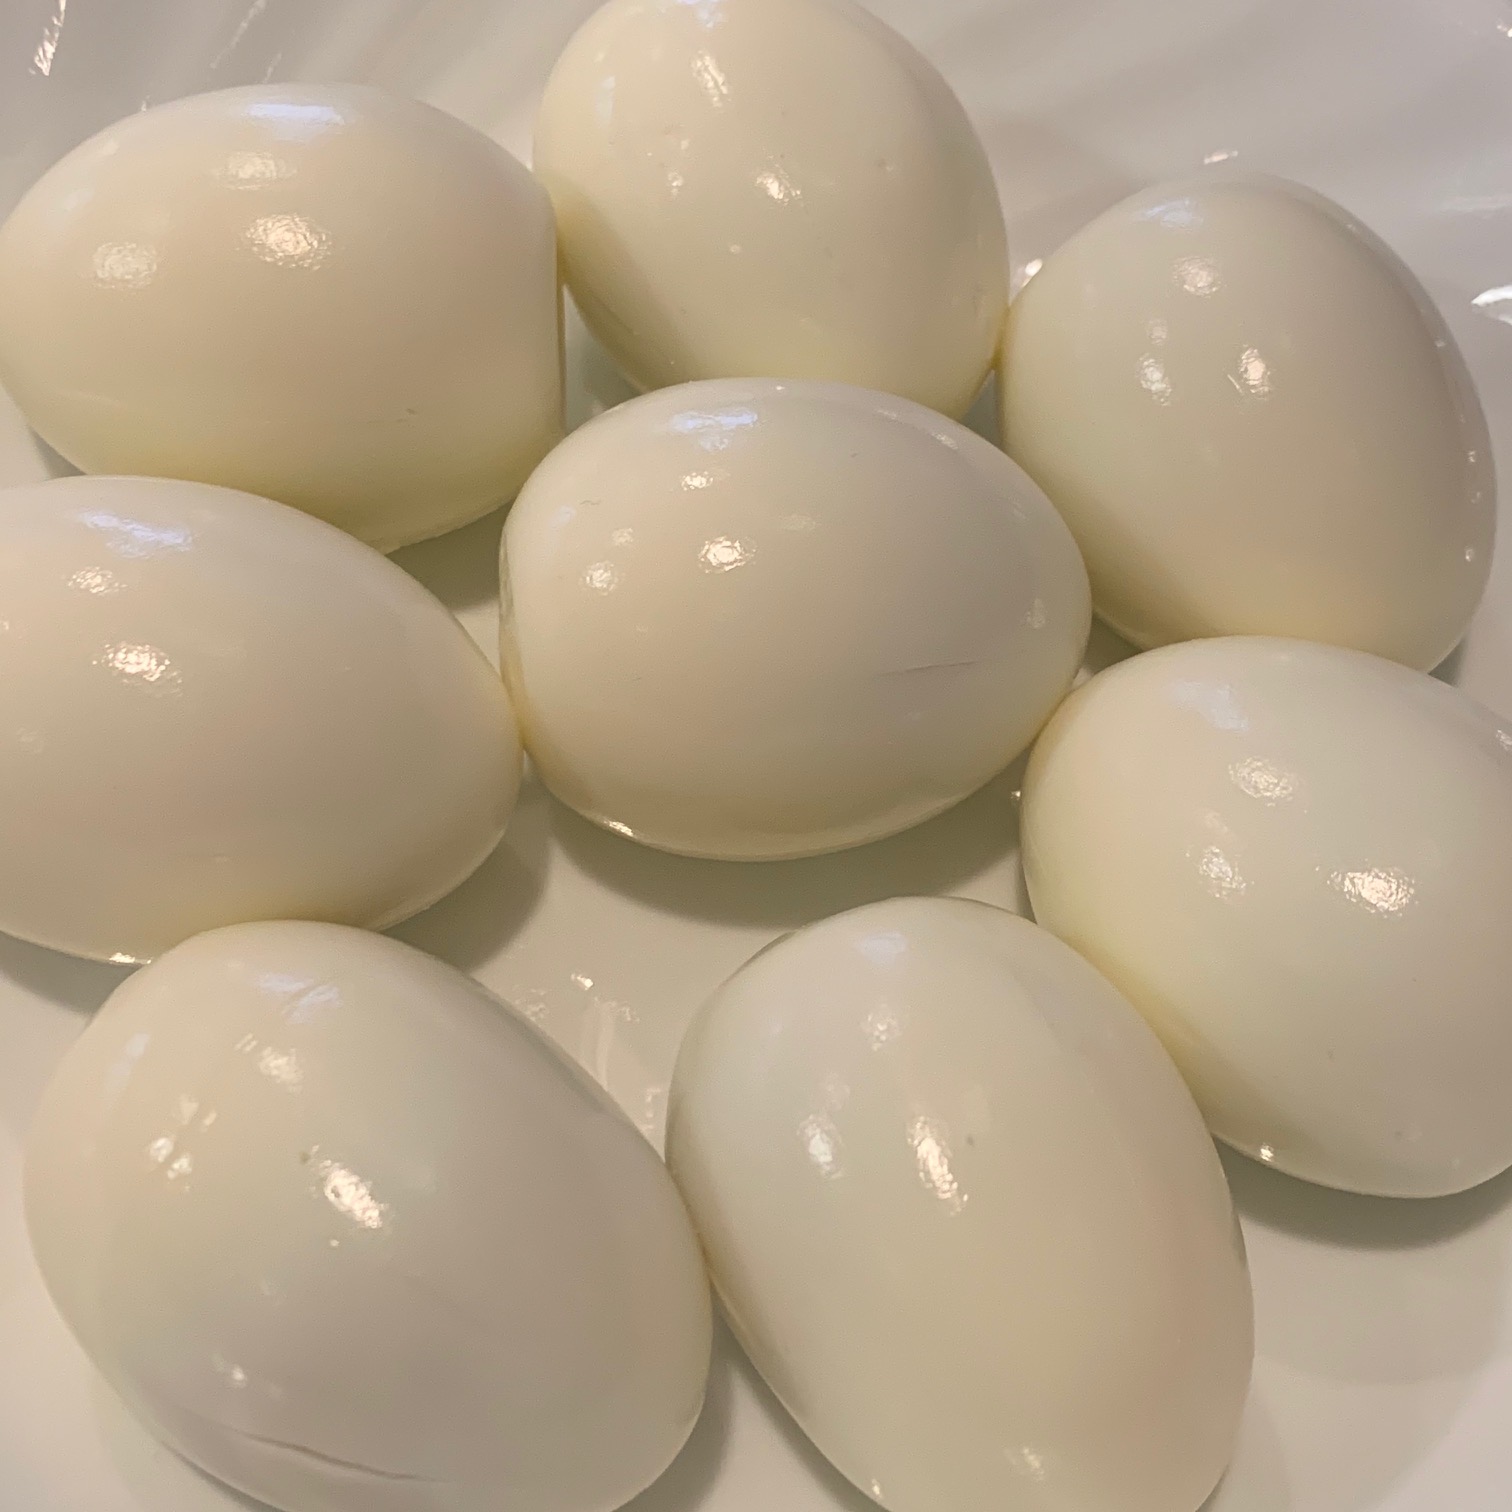 Kashi Delights Hardboiled Eggs 555' Instant Pot Method